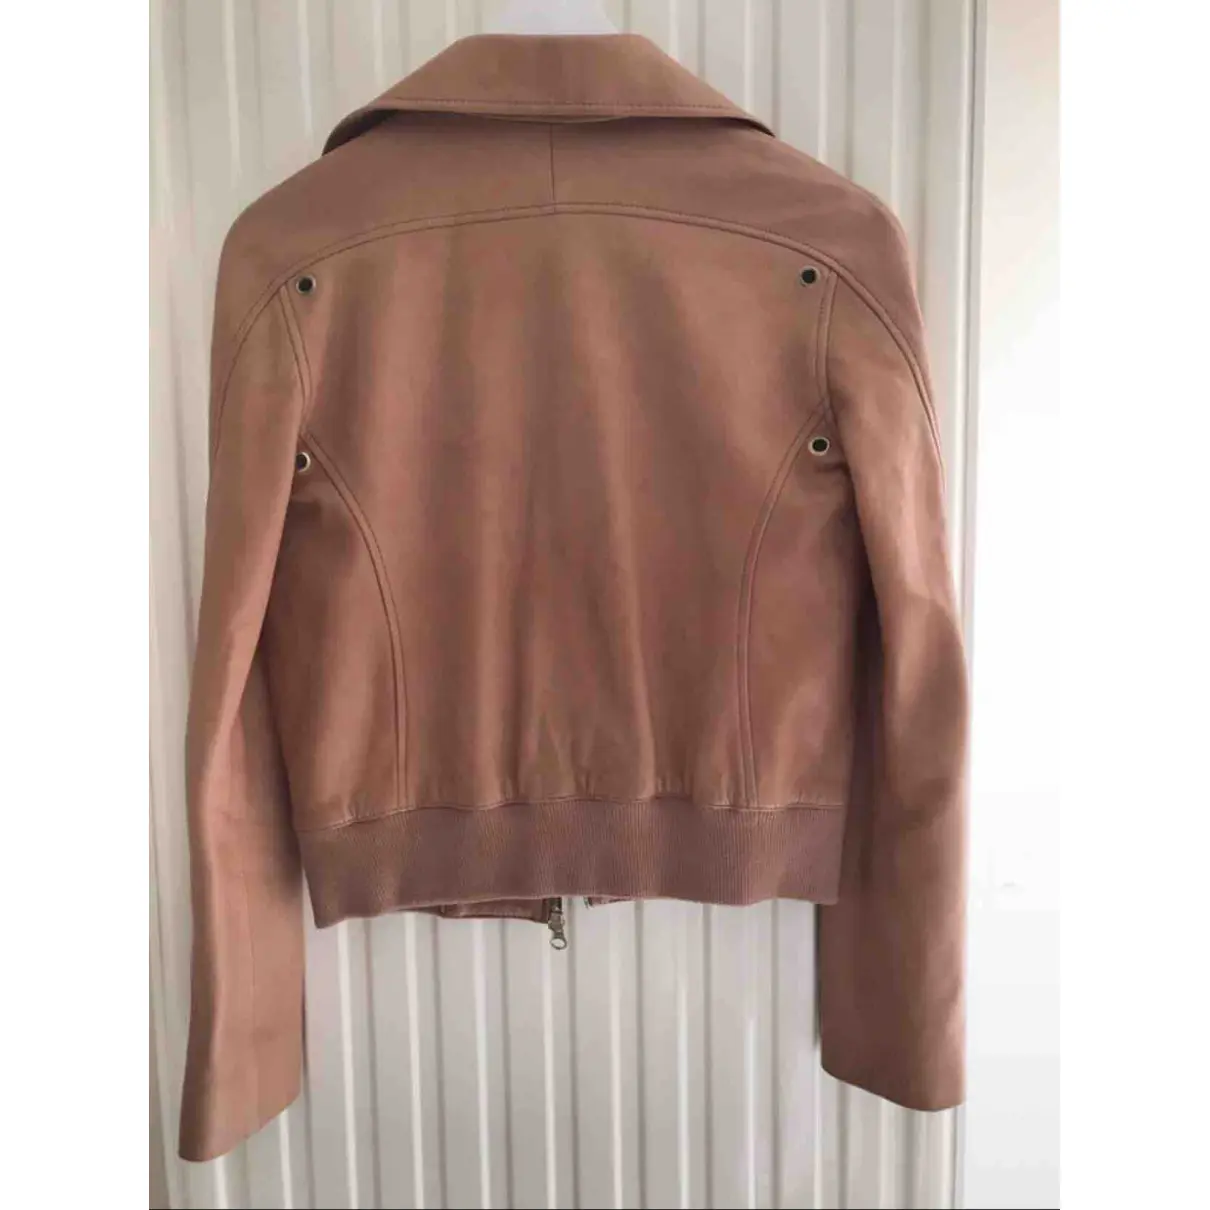 Buy Chloé Leather short vest online - Vintage